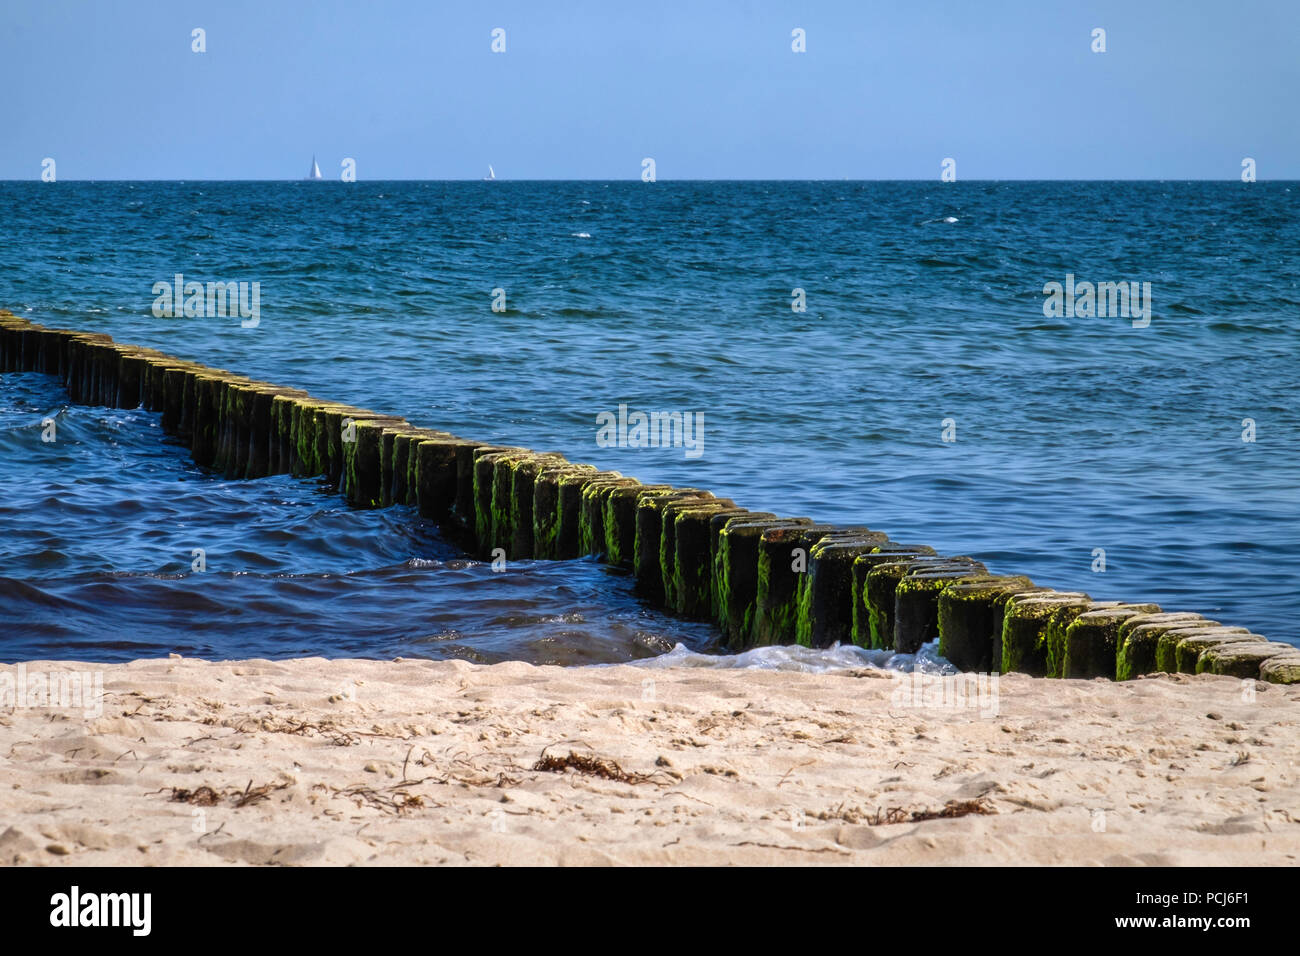 Germania Loddin,Stubbenfelde Beach. Di balneazione costiere resort sull'isola di Usedom sul Mar Baltico. Spiaggia di sabbia e alghe-coperto groyne,blue sea & sky Foto Stock